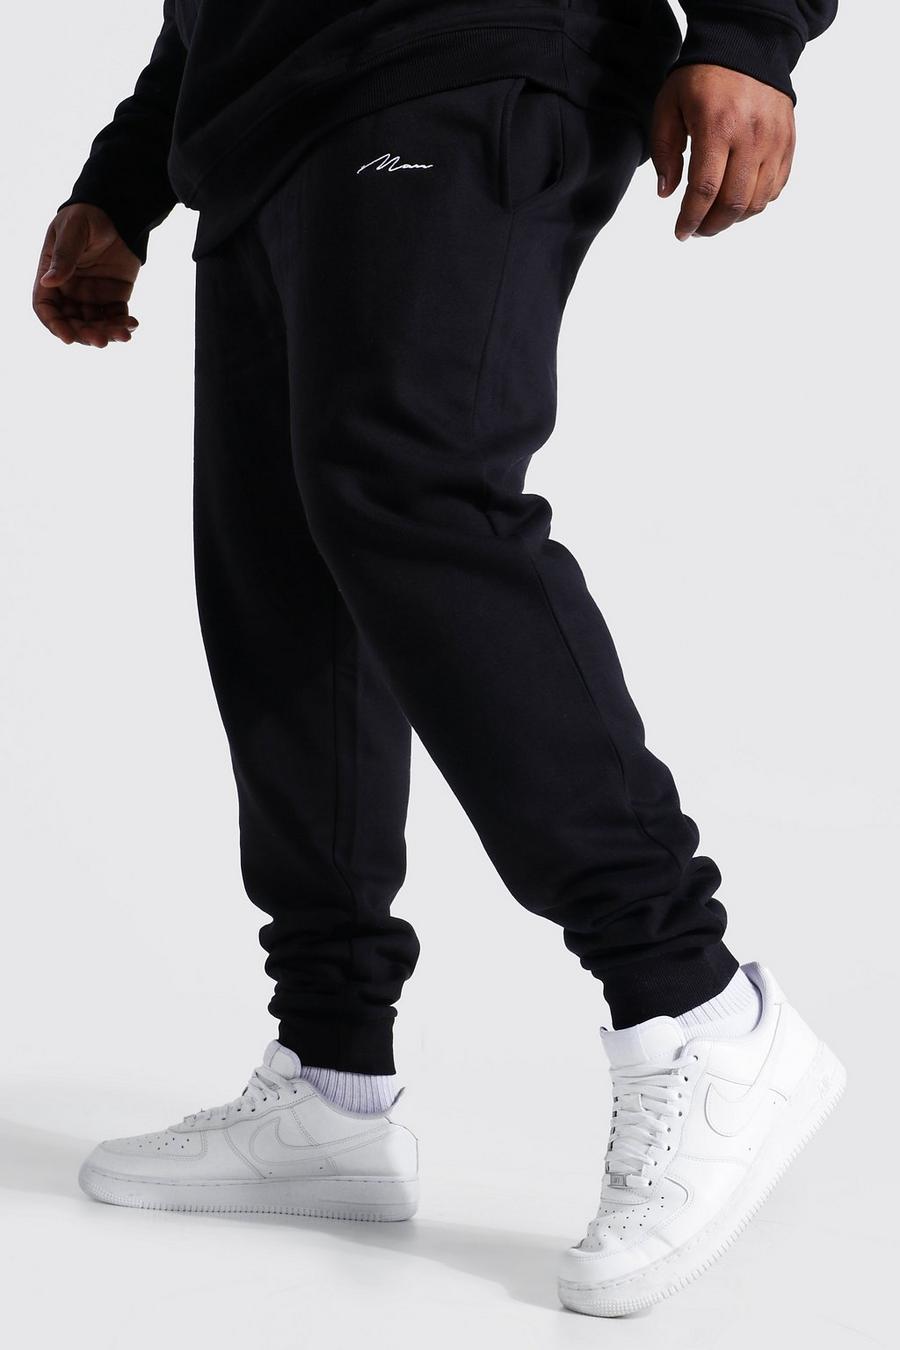 Pantaloni tuta Plus Size in fibre riciclate con scritta Man Skinny Fit, Black negro